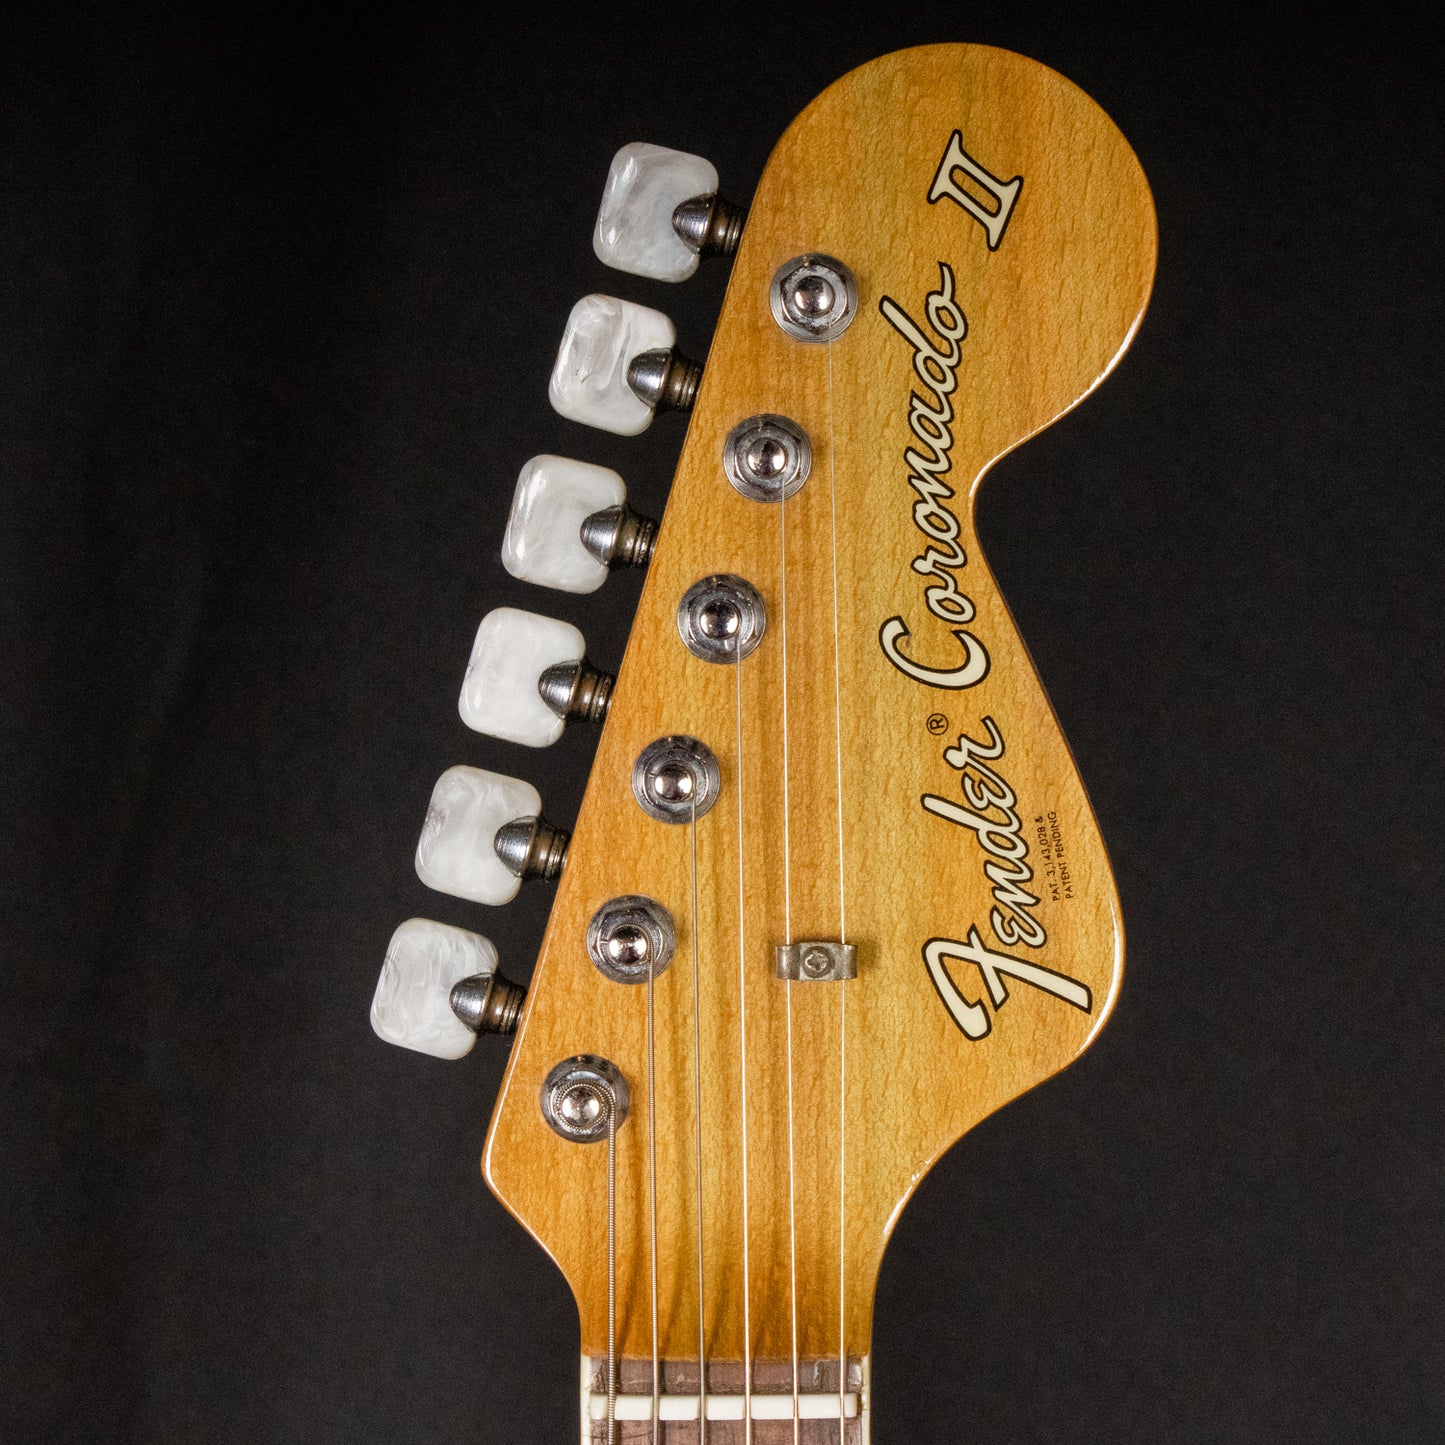 1967 Fender Coronado II Wildwood I